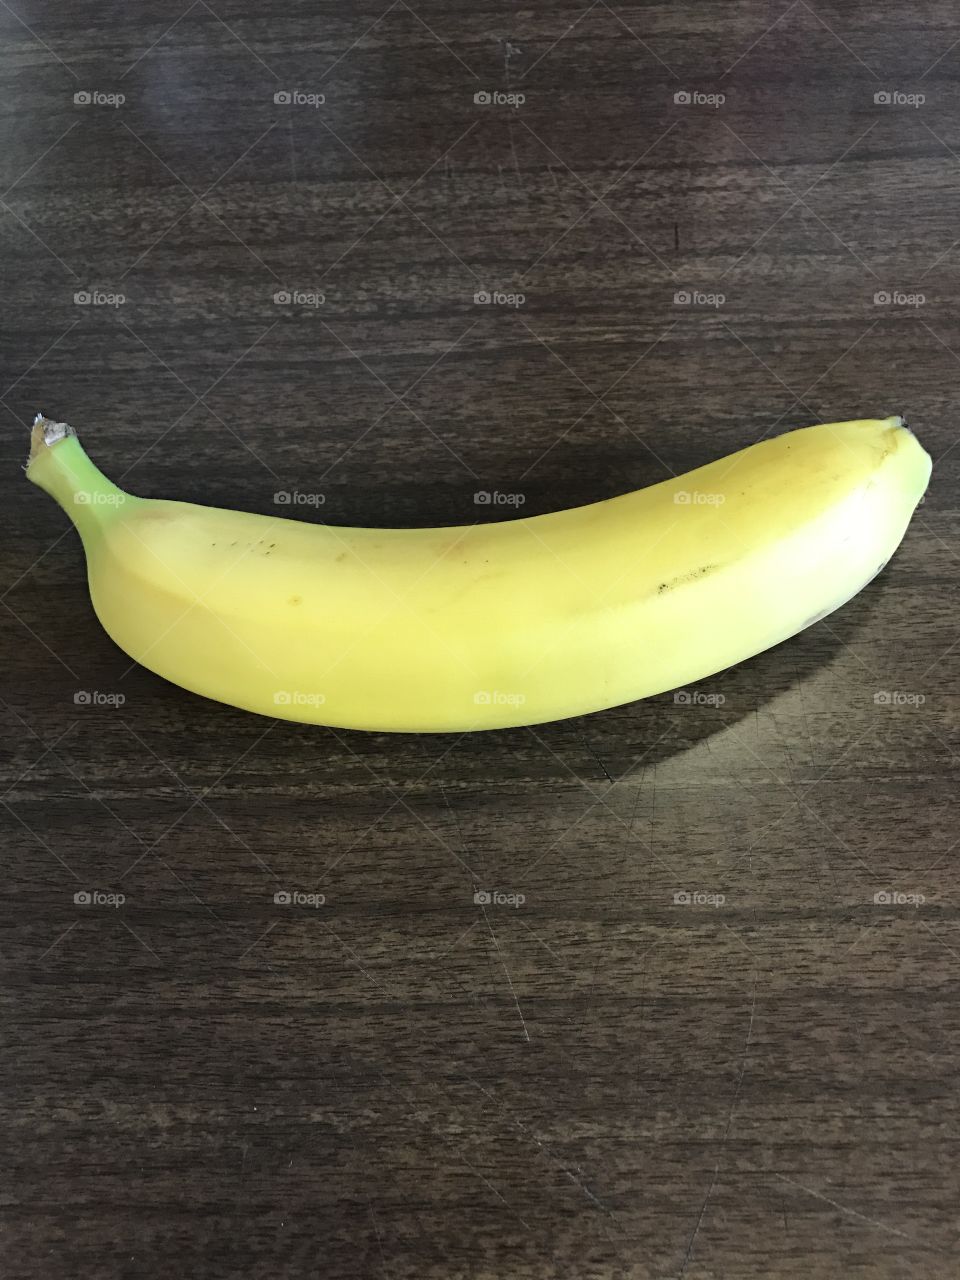 Just a banana!